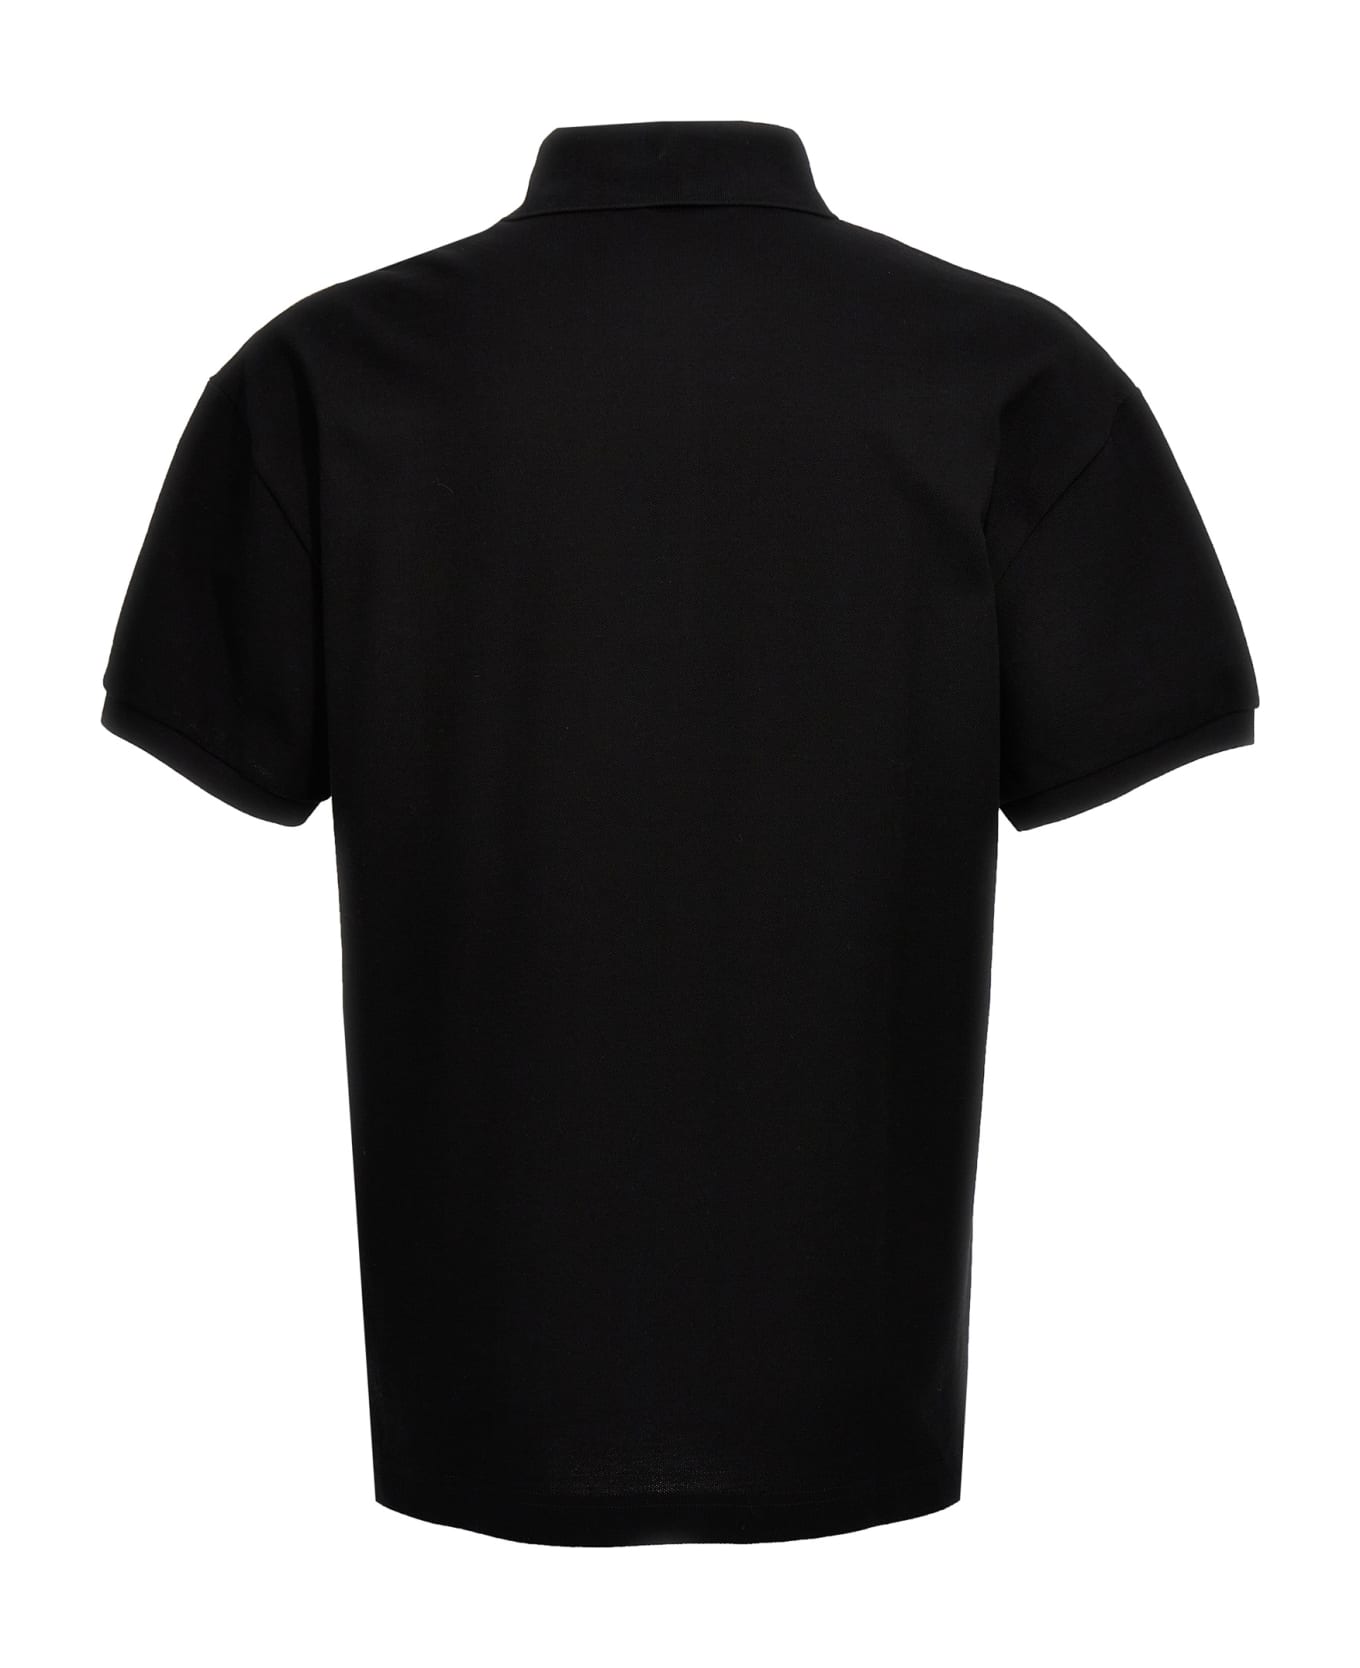 Palm Angels 'monogram' Polo Shirt - Black   ポロシャツ